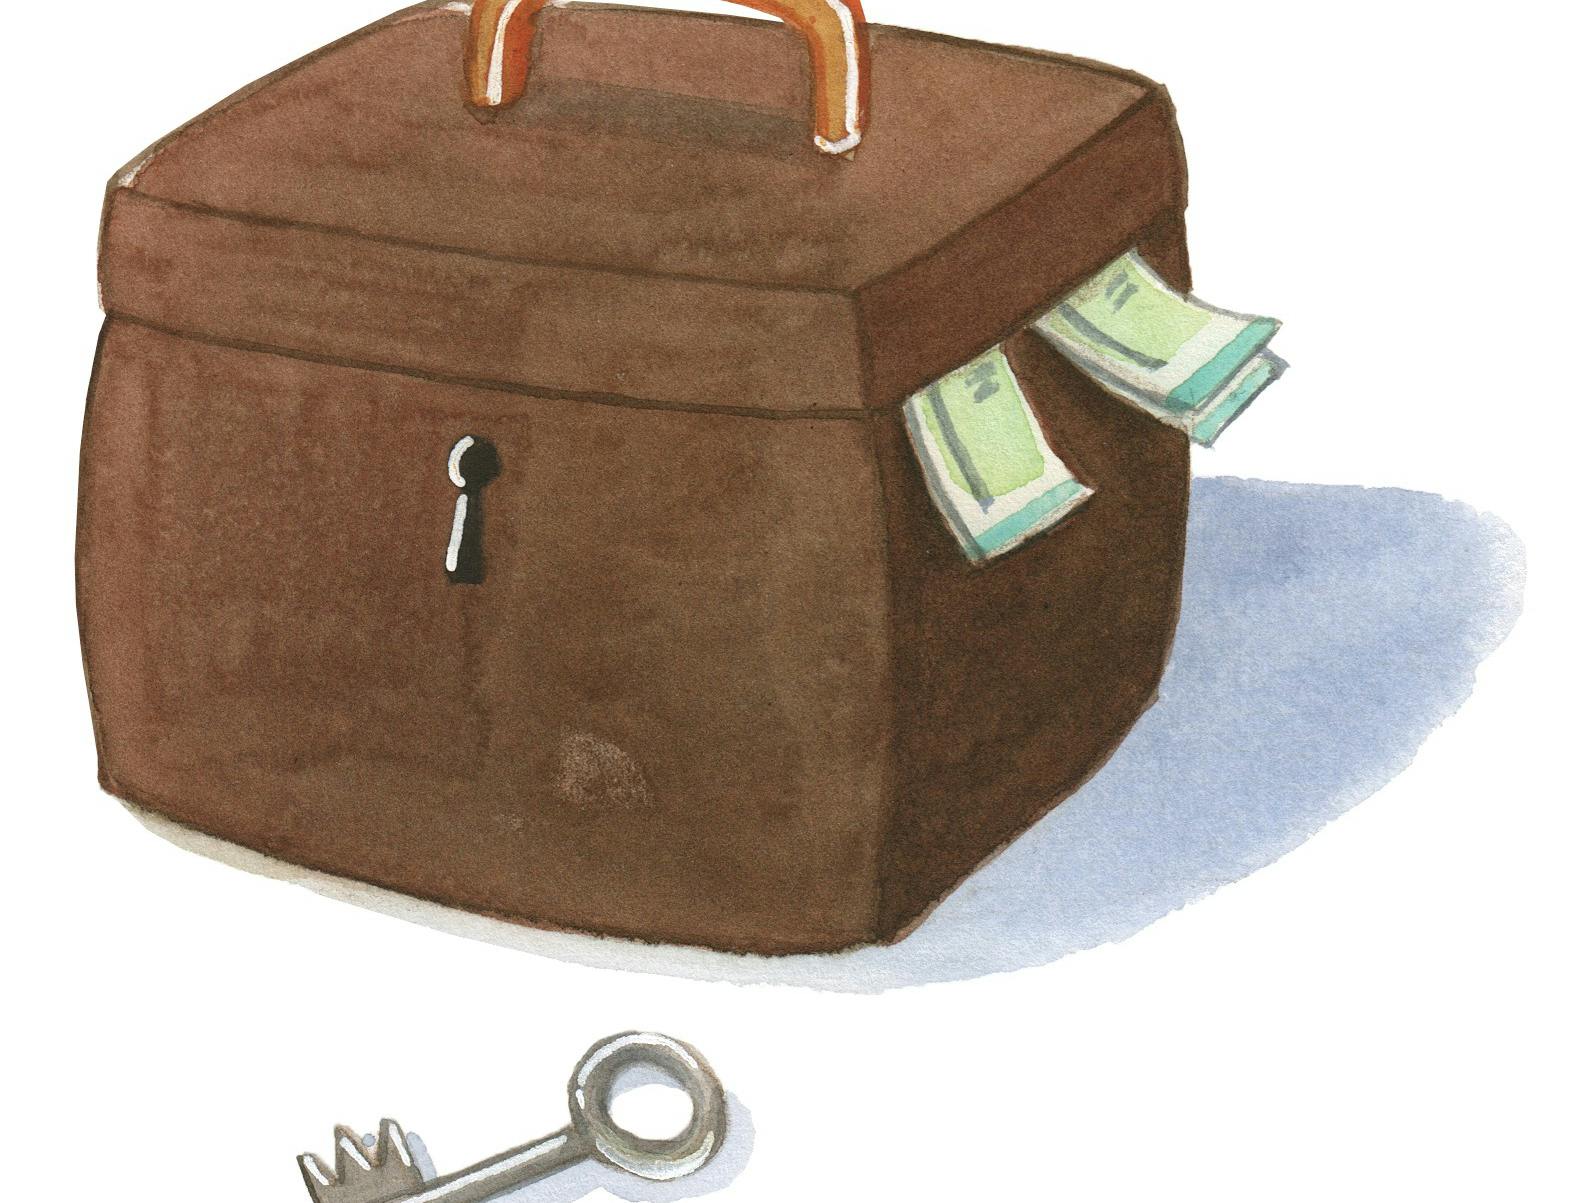 En kuffert med penge og en stor nøgle